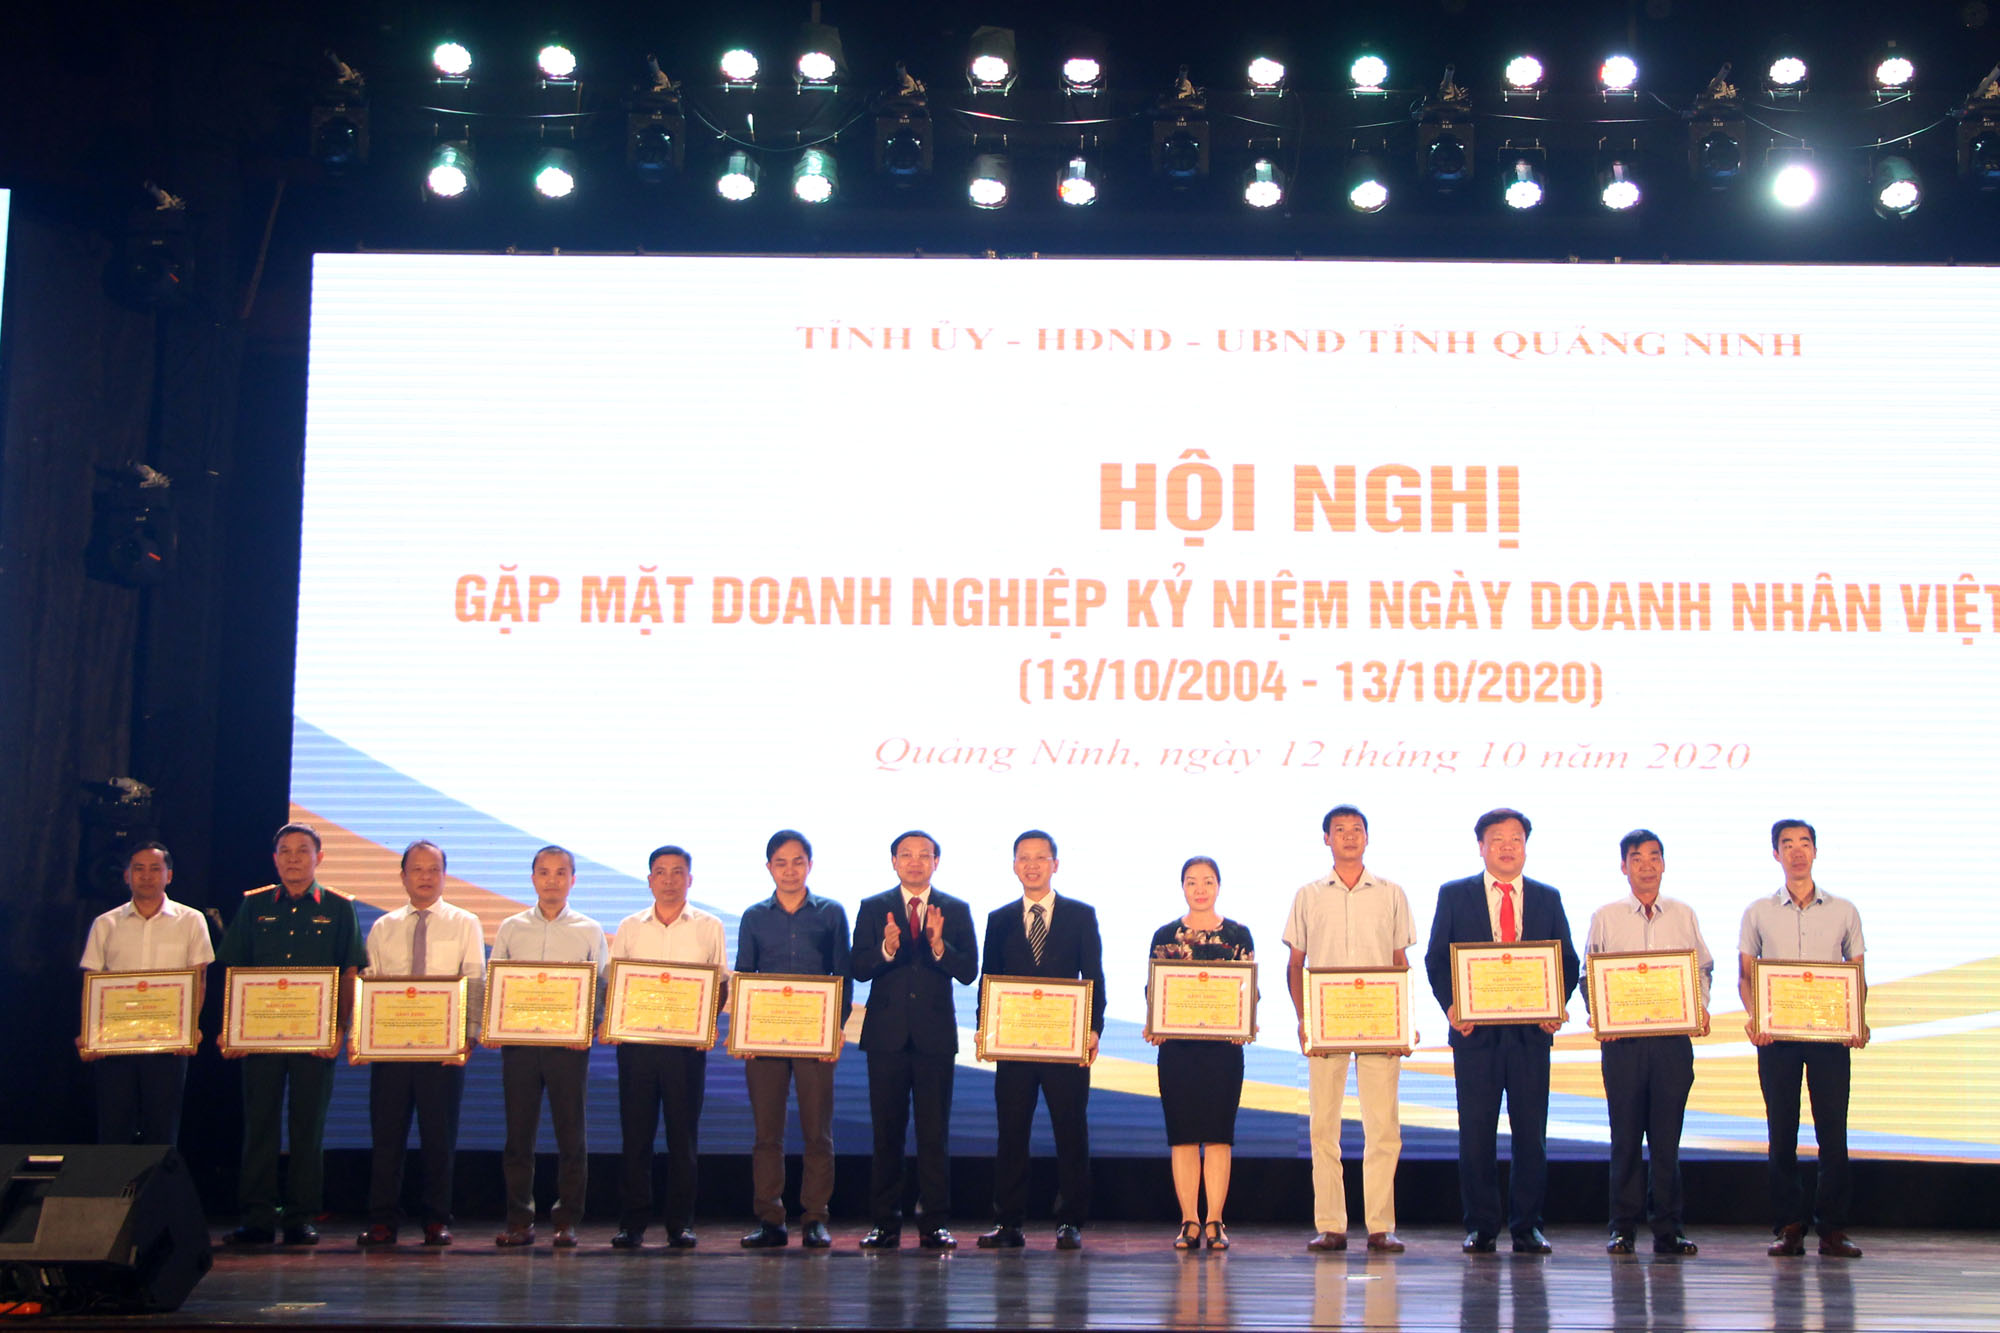 Đồng chí Nguyễn Xuân Ký, Bí thư Tỉnh ủy, Chủ tịch HĐND tỉnh, trao Bằng khen cho 20 tập thể